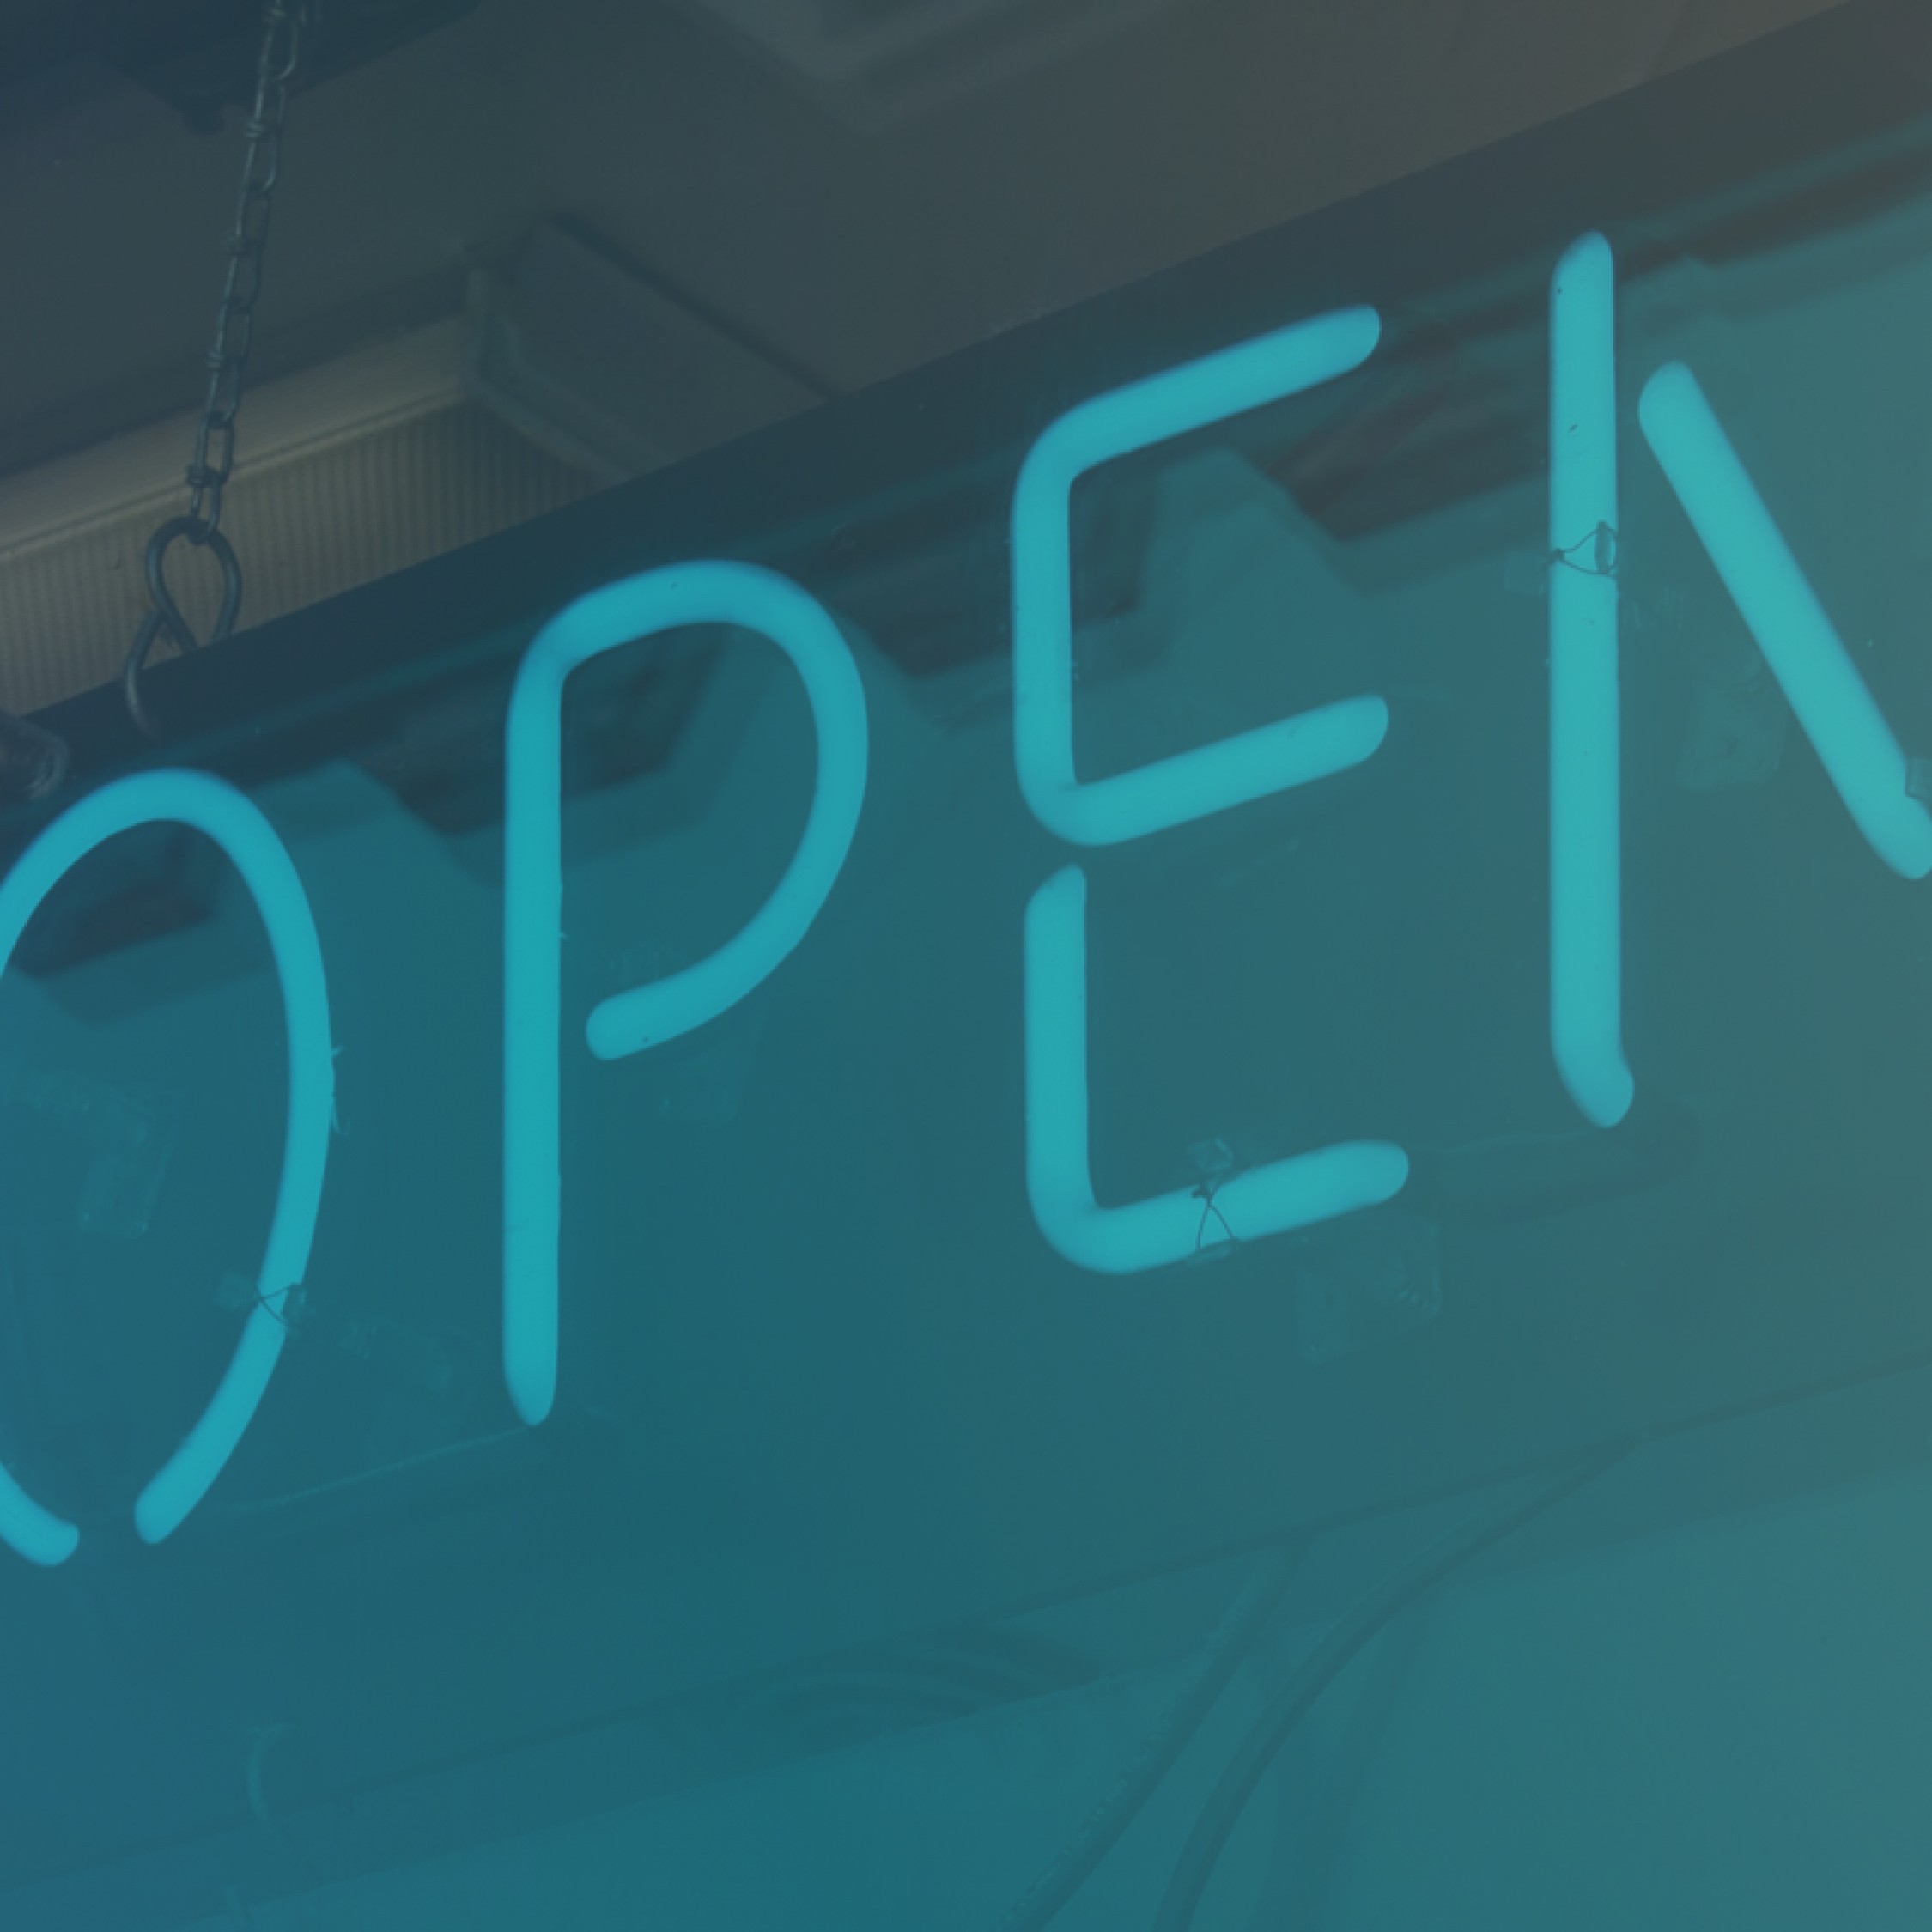 An "open" sign